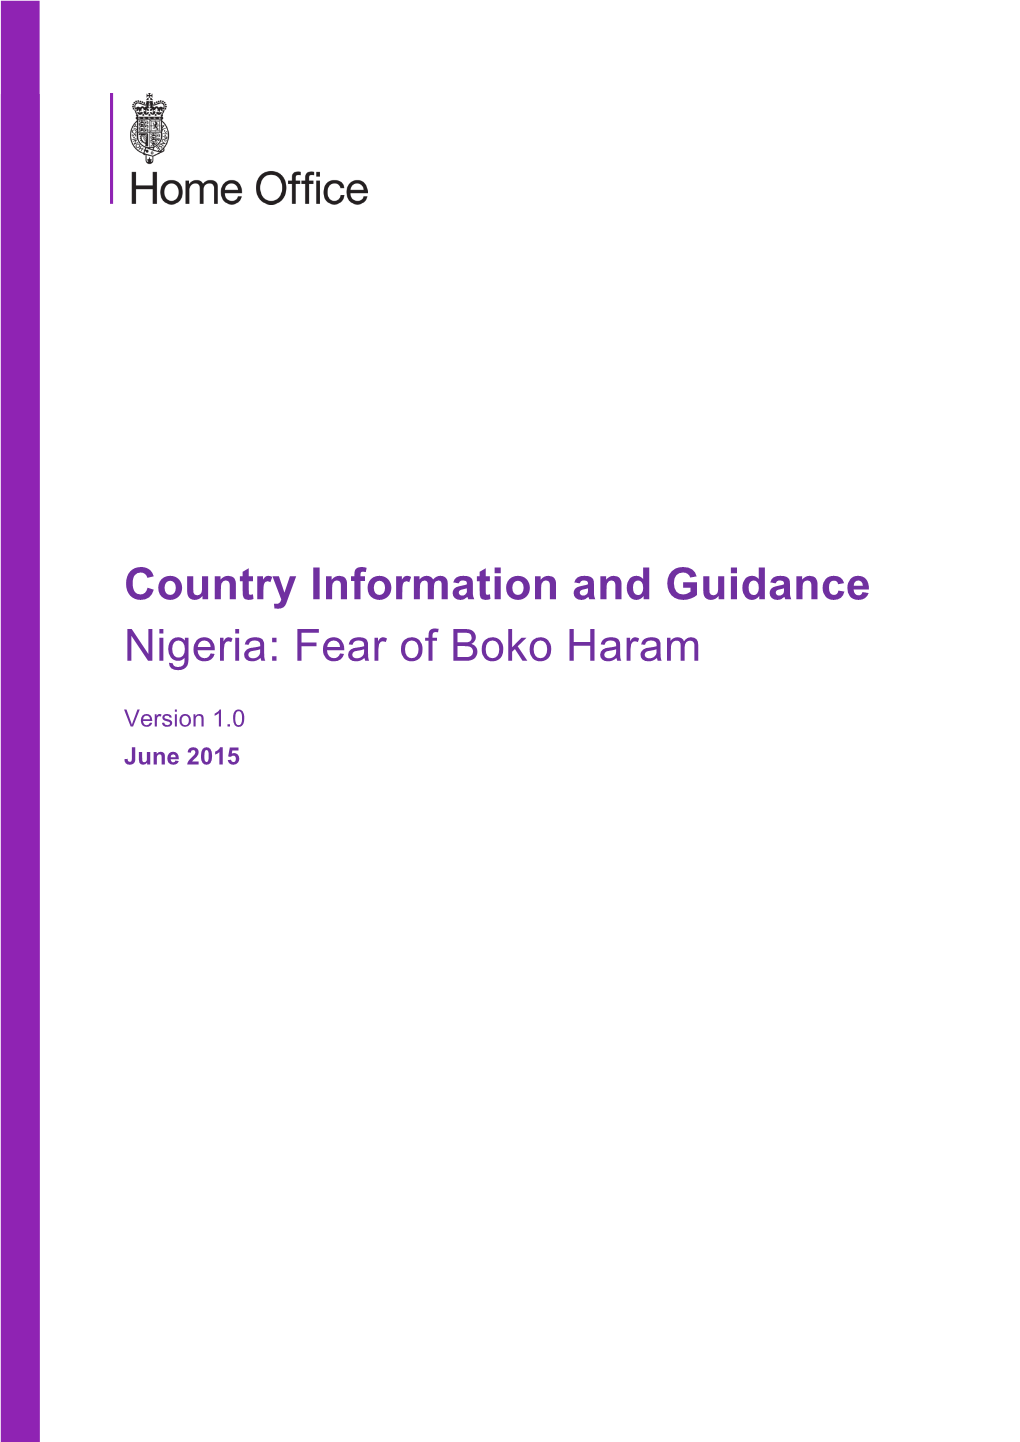 Fear of Boko Haram